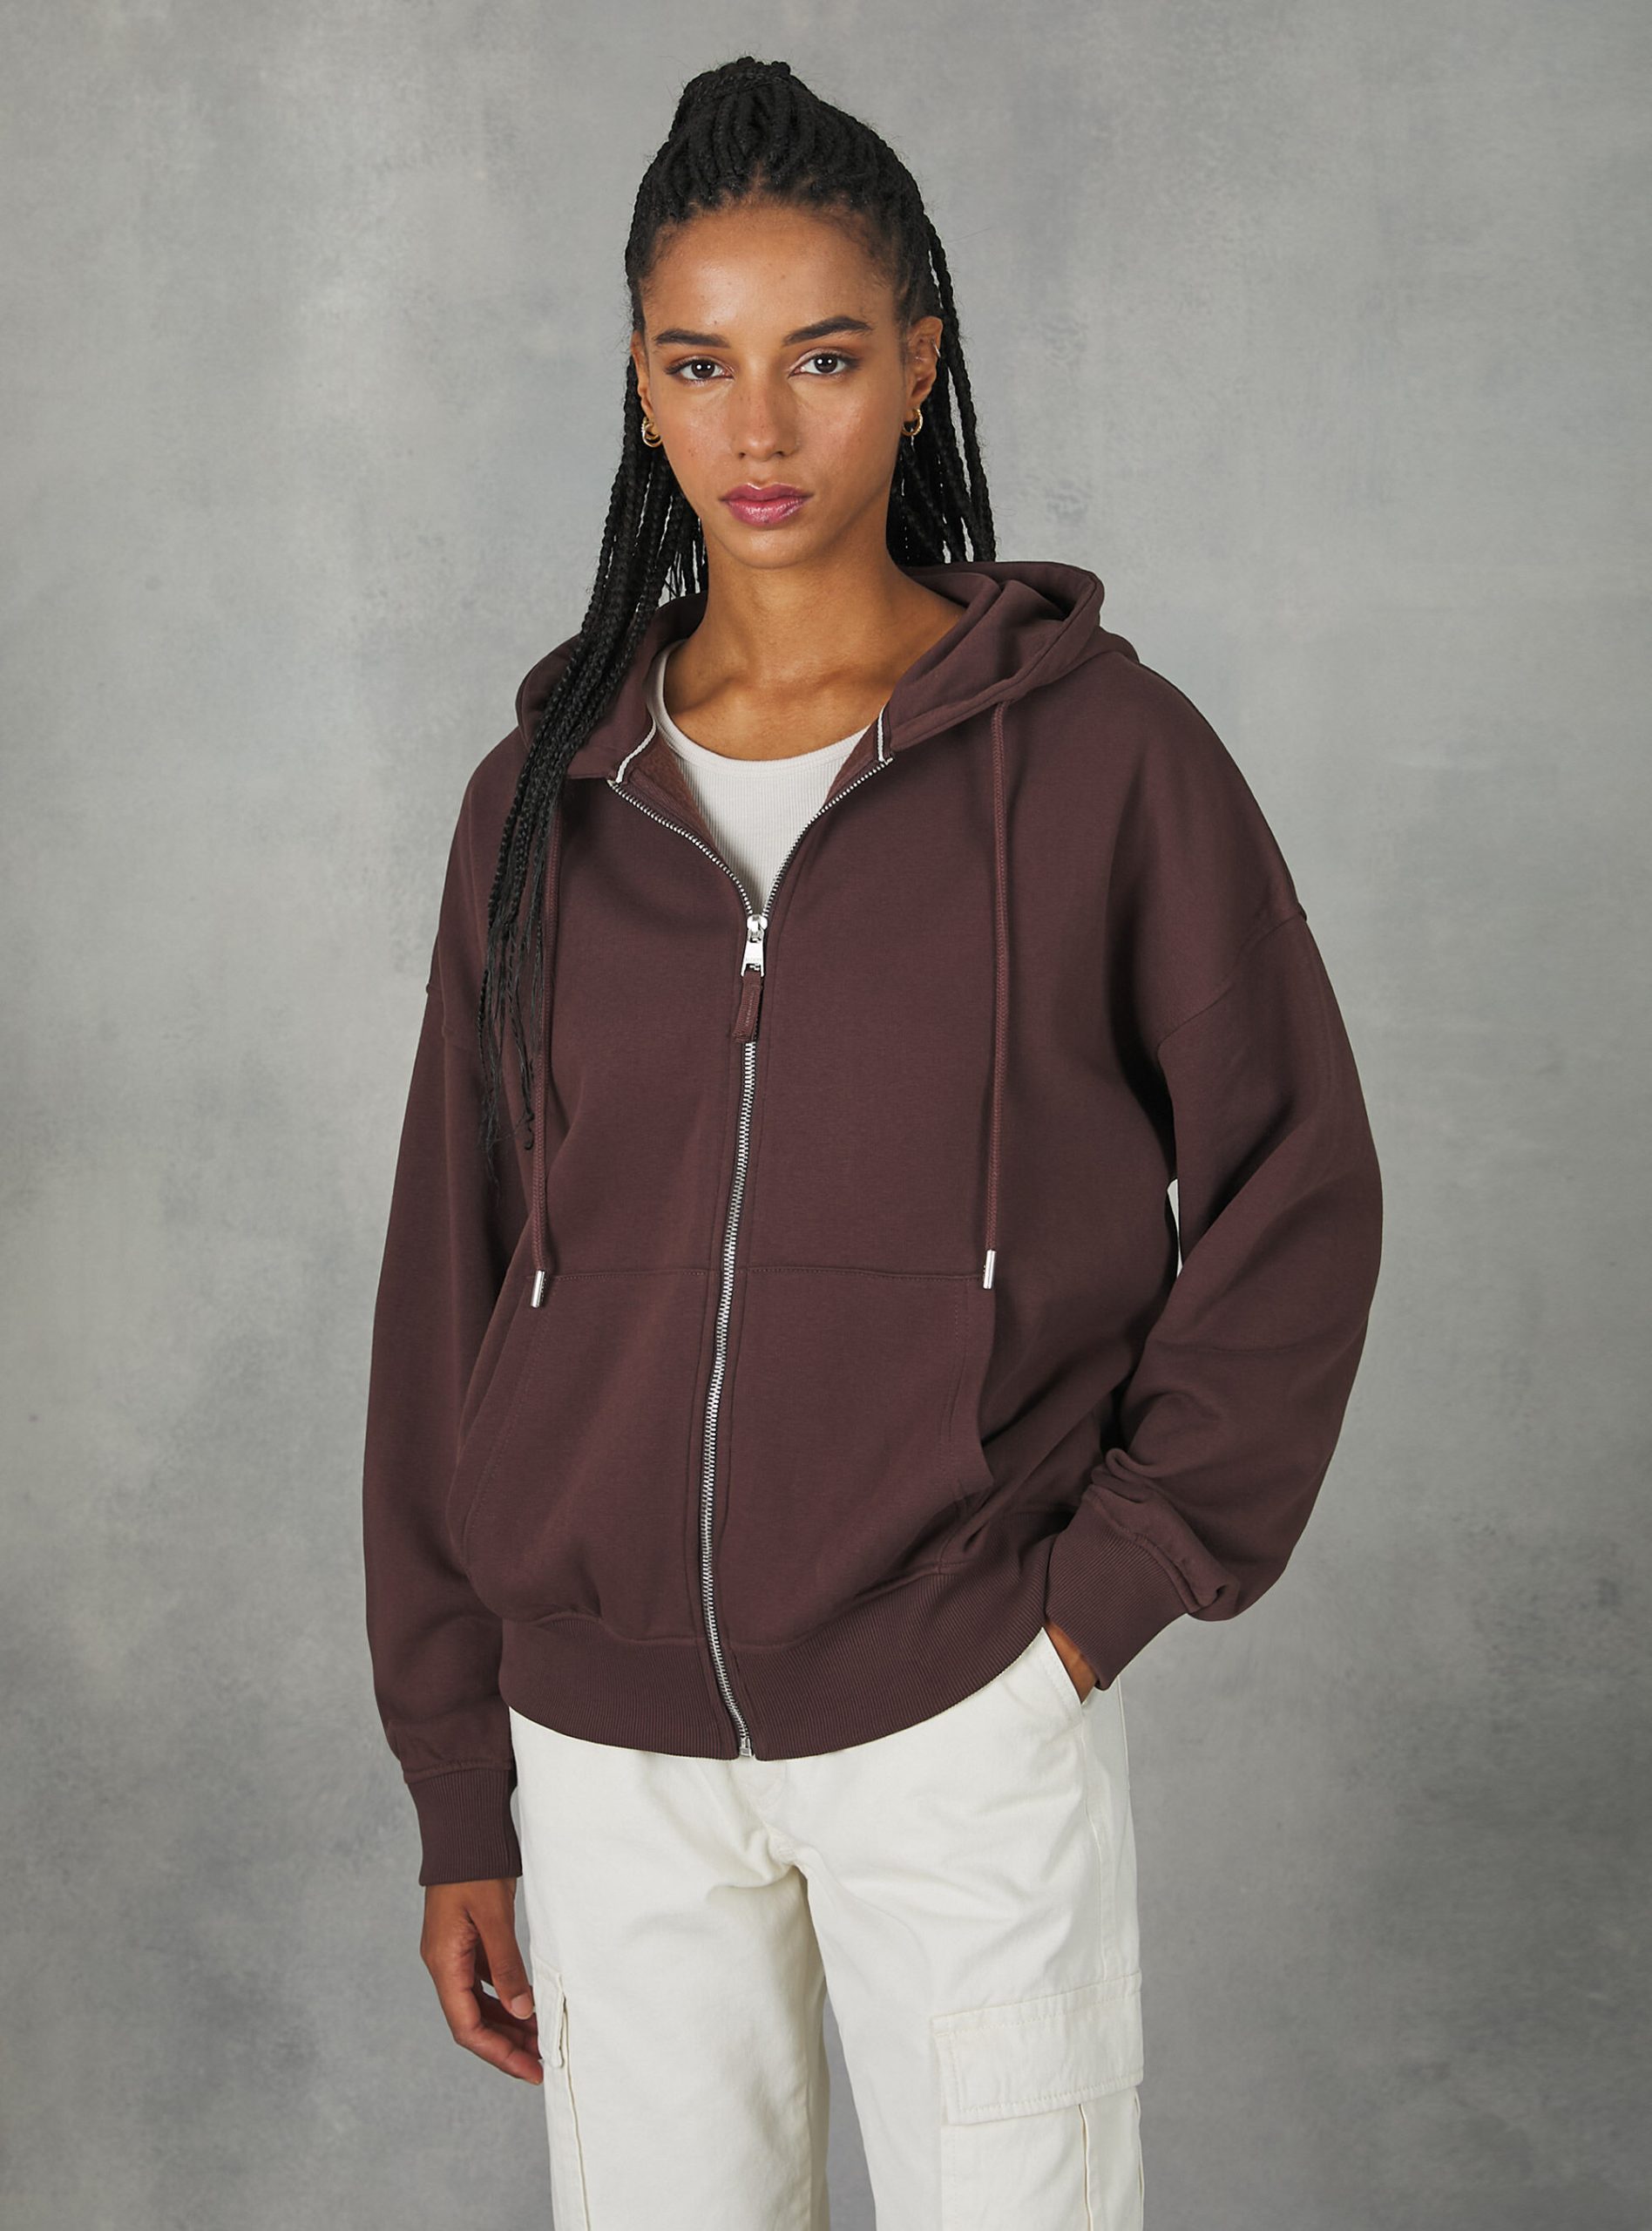 Produktqualitätsmanagement Cotton Zip Hoodie Alcott Br2 Brown Medium Sweatshirts Frauen – 2